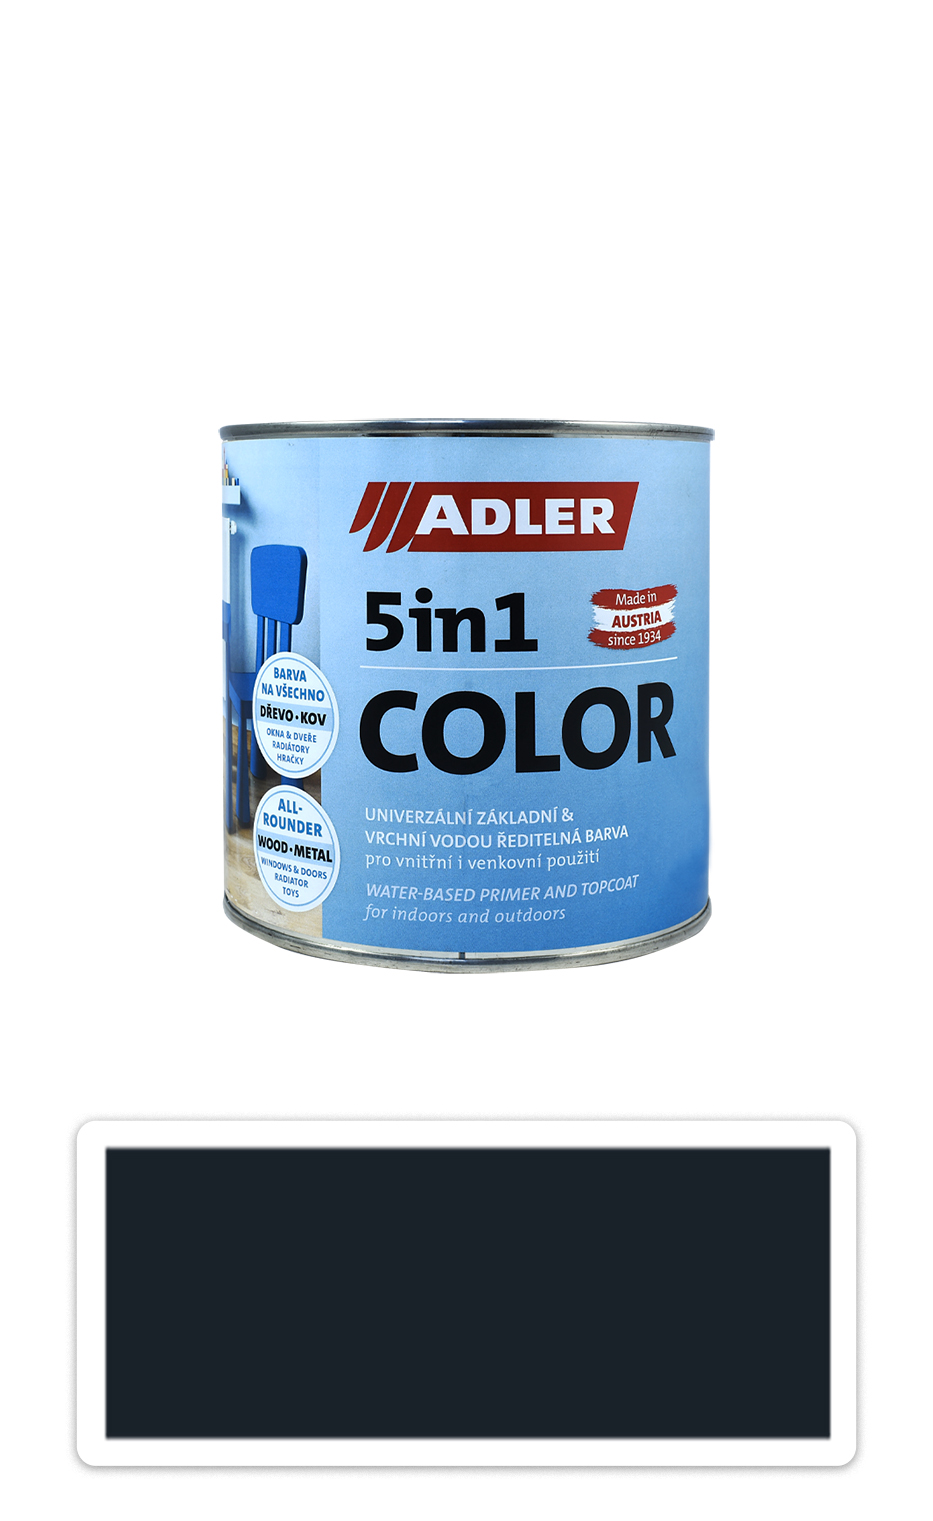 ADLER 5in1 Color - univerzálna vodou riediteľná farba 0.75 l Schwarzgrau / Čiernošedá RAL 7021